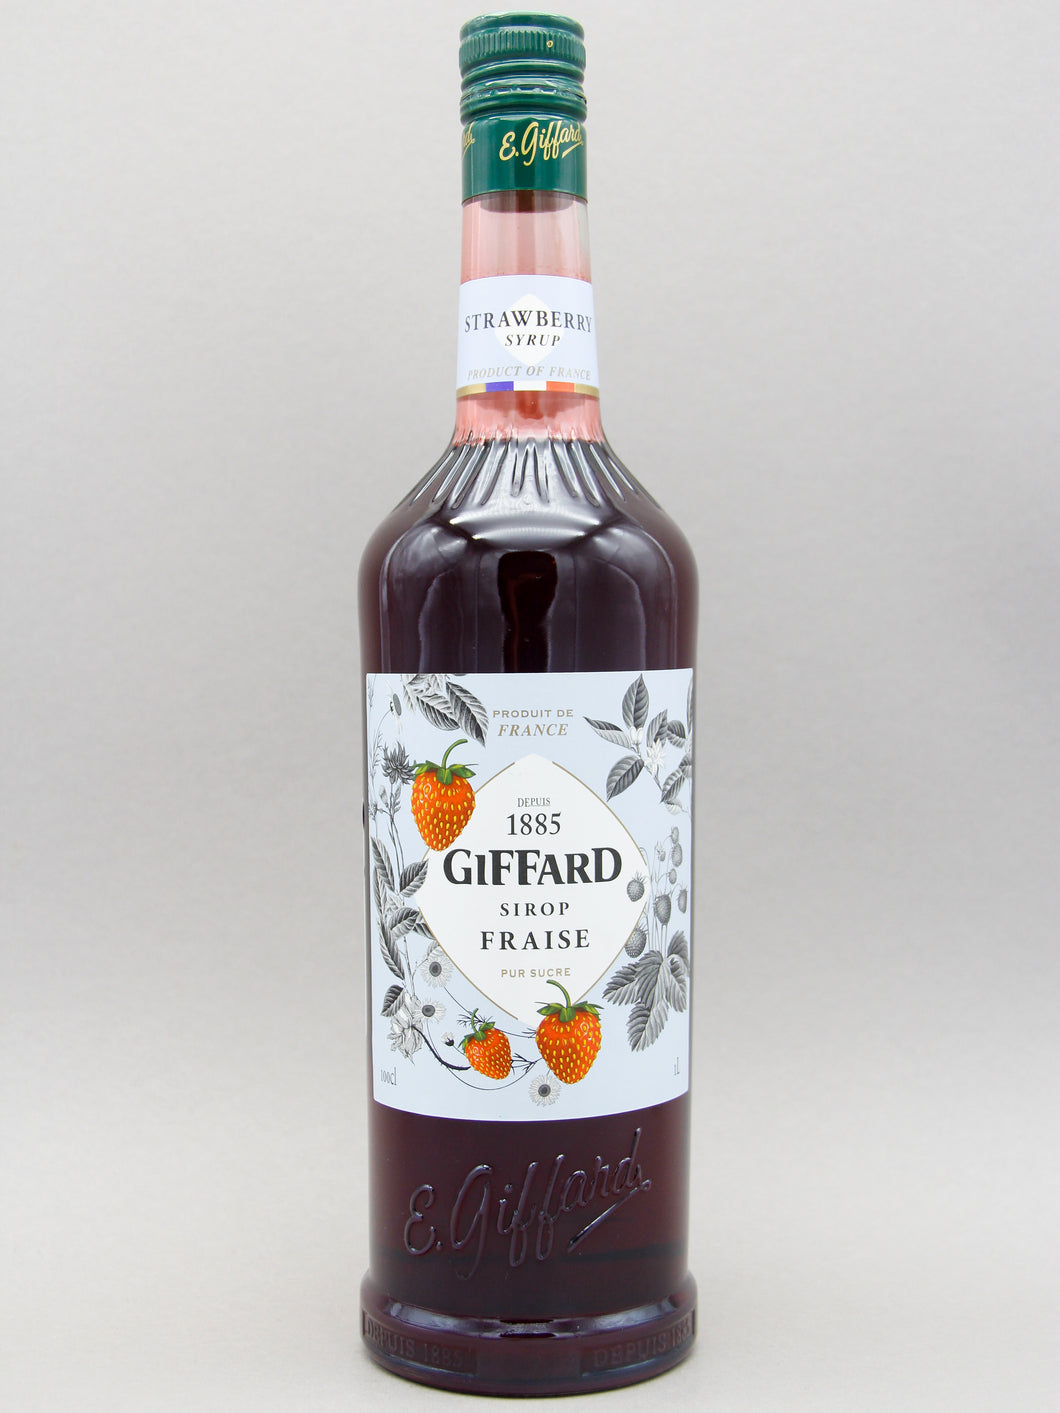 Giffard Strawberry Syrup (100cl)